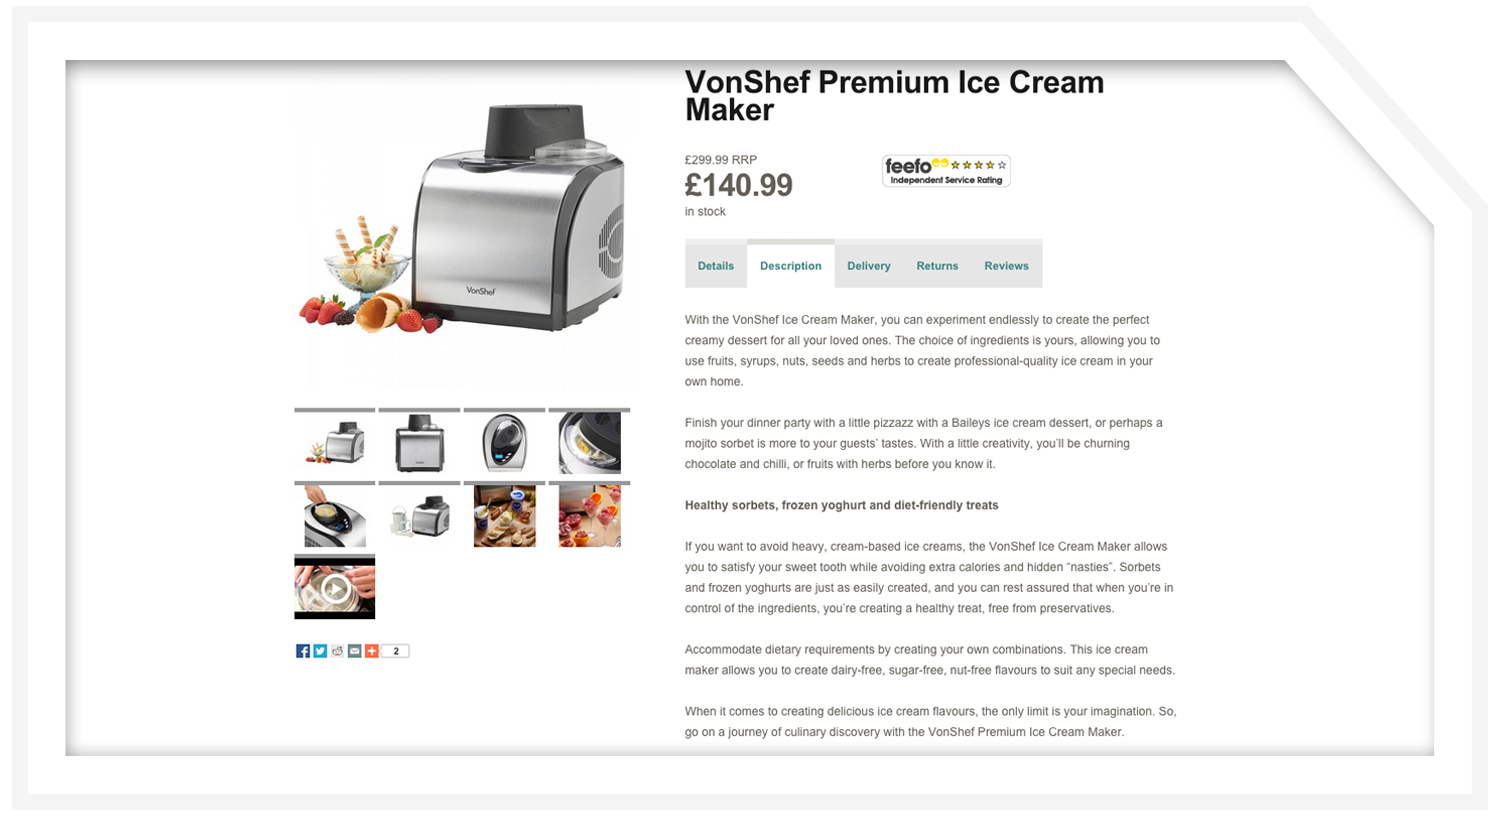 Product description: Ice cream maker